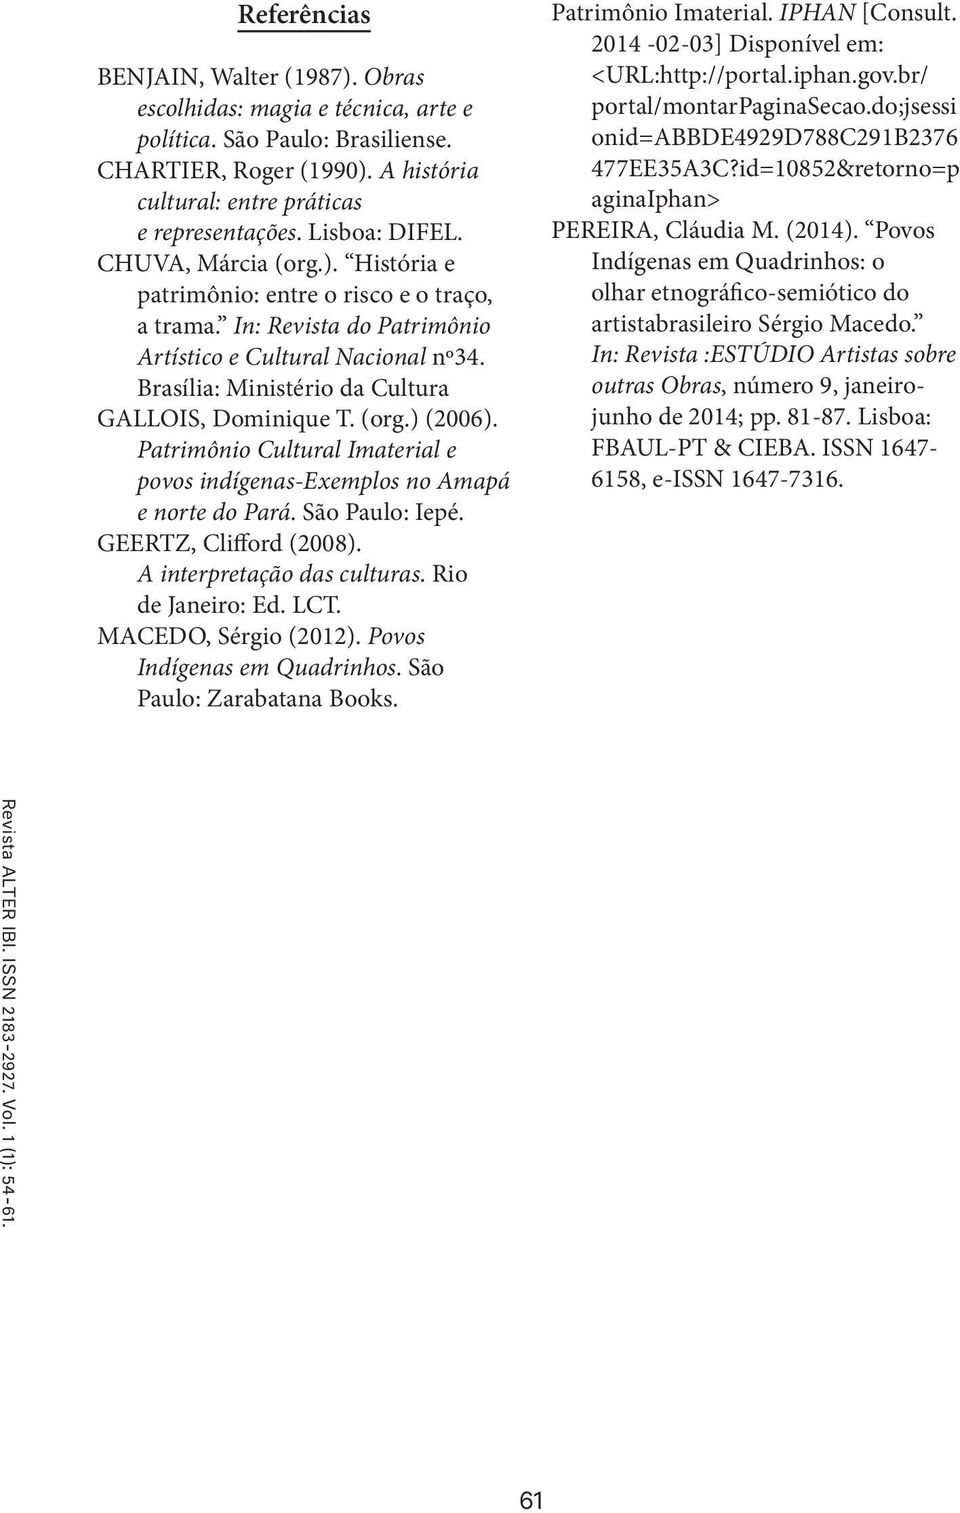 Brasília: Ministério da Cultura GALLOIS, Dominique T. (org.) (2006). Patrimônio Cultural Imaterial e povos indígenas-exemplos no Amapá e norte do Pará. São Paulo: Iepé. GEERTZ, Clifford (2008).